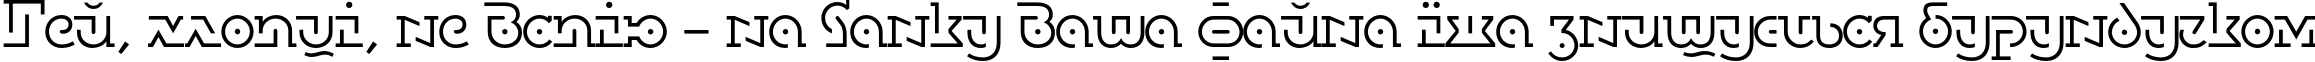 Пример написания шрифтом DublonBrusLight текста на украинском